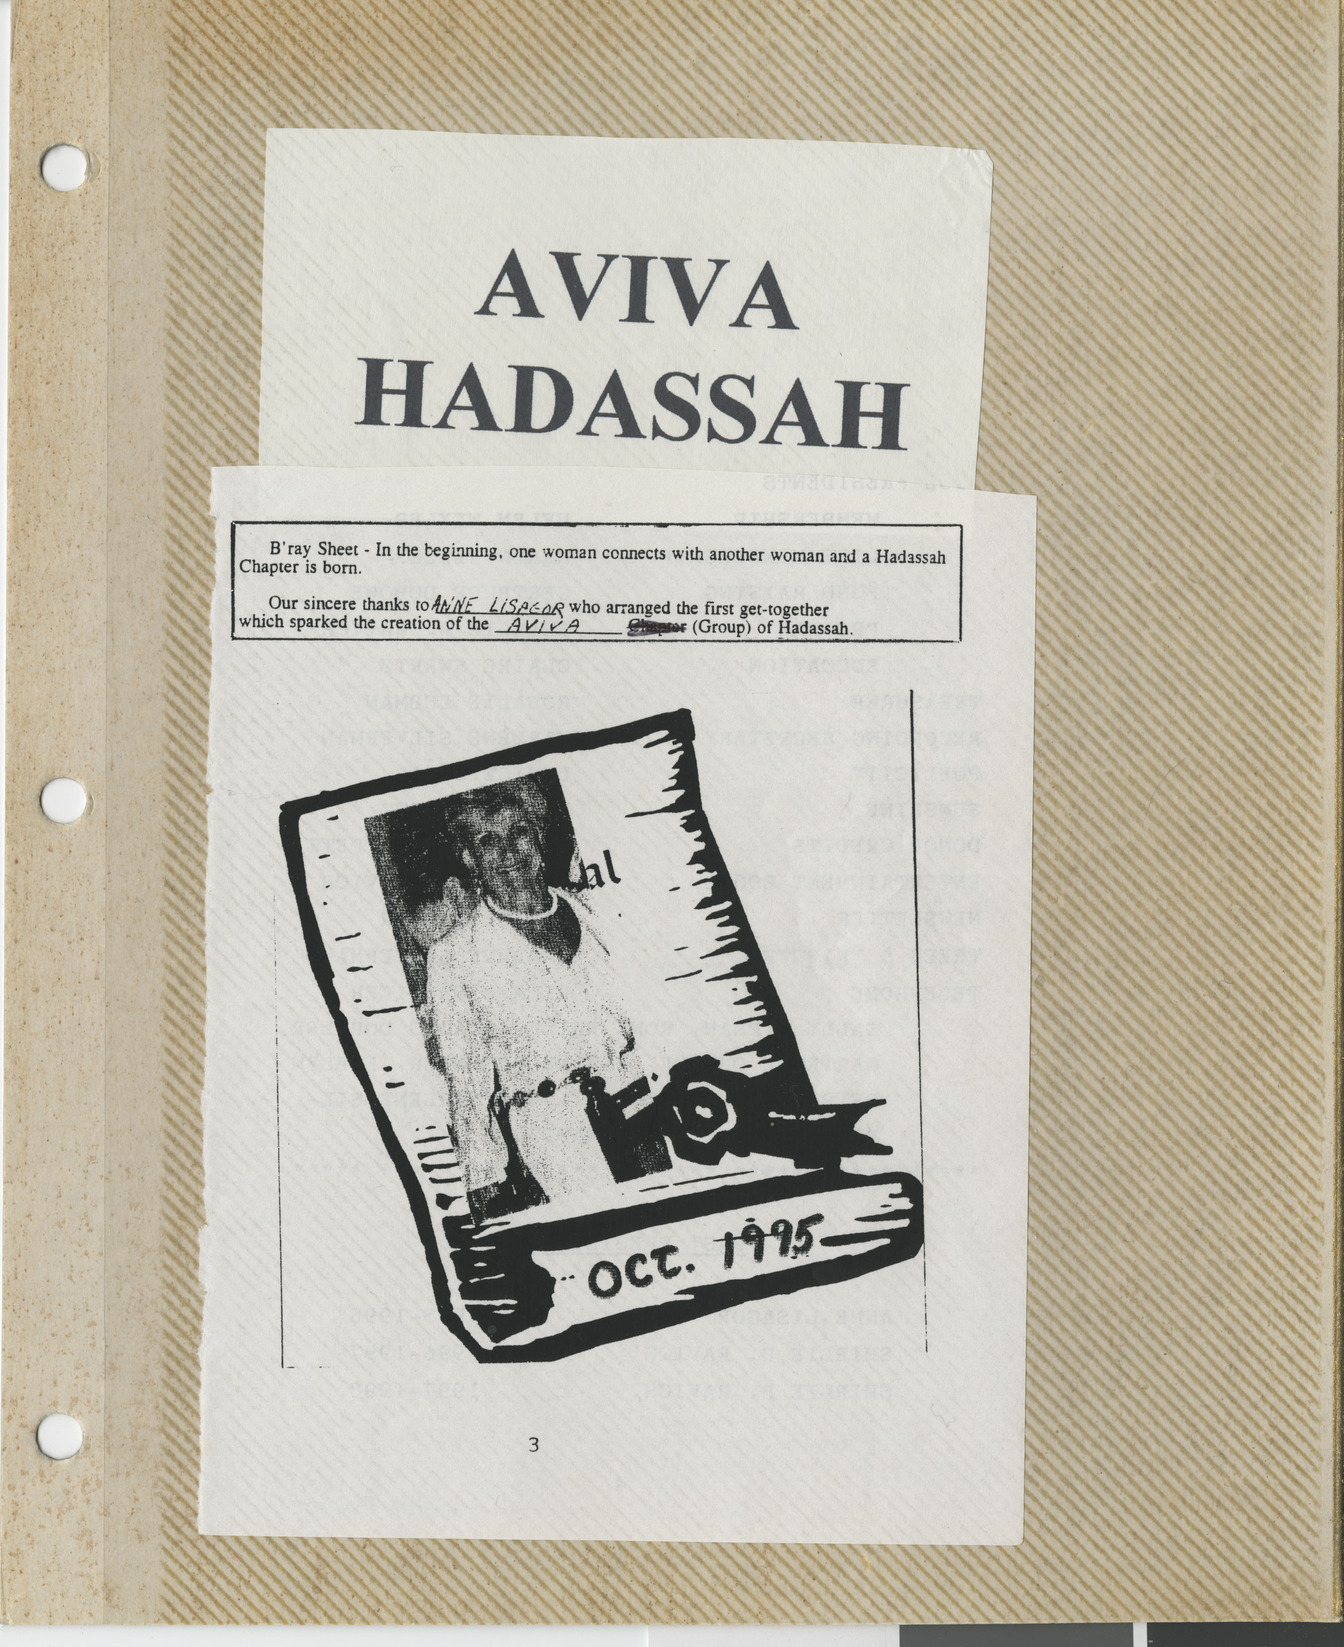 Clipping, Aviva Hadassah, October 1995